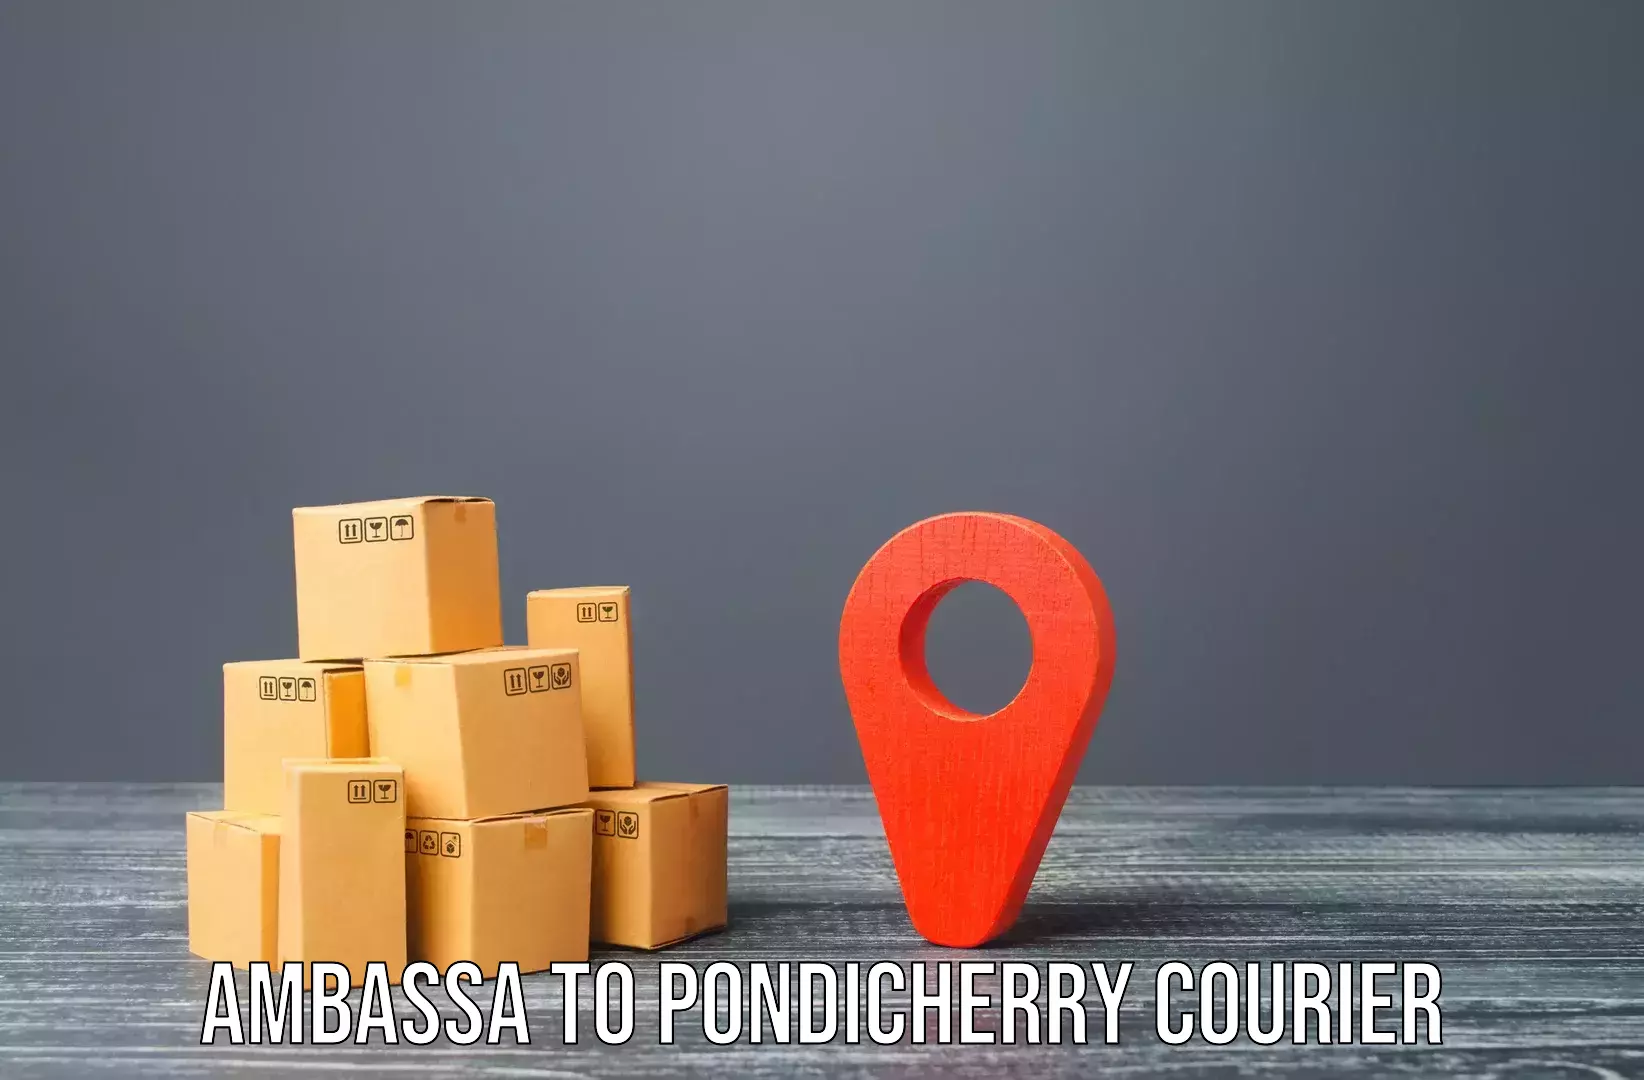 Home shifting experts Ambassa to Pondicherry